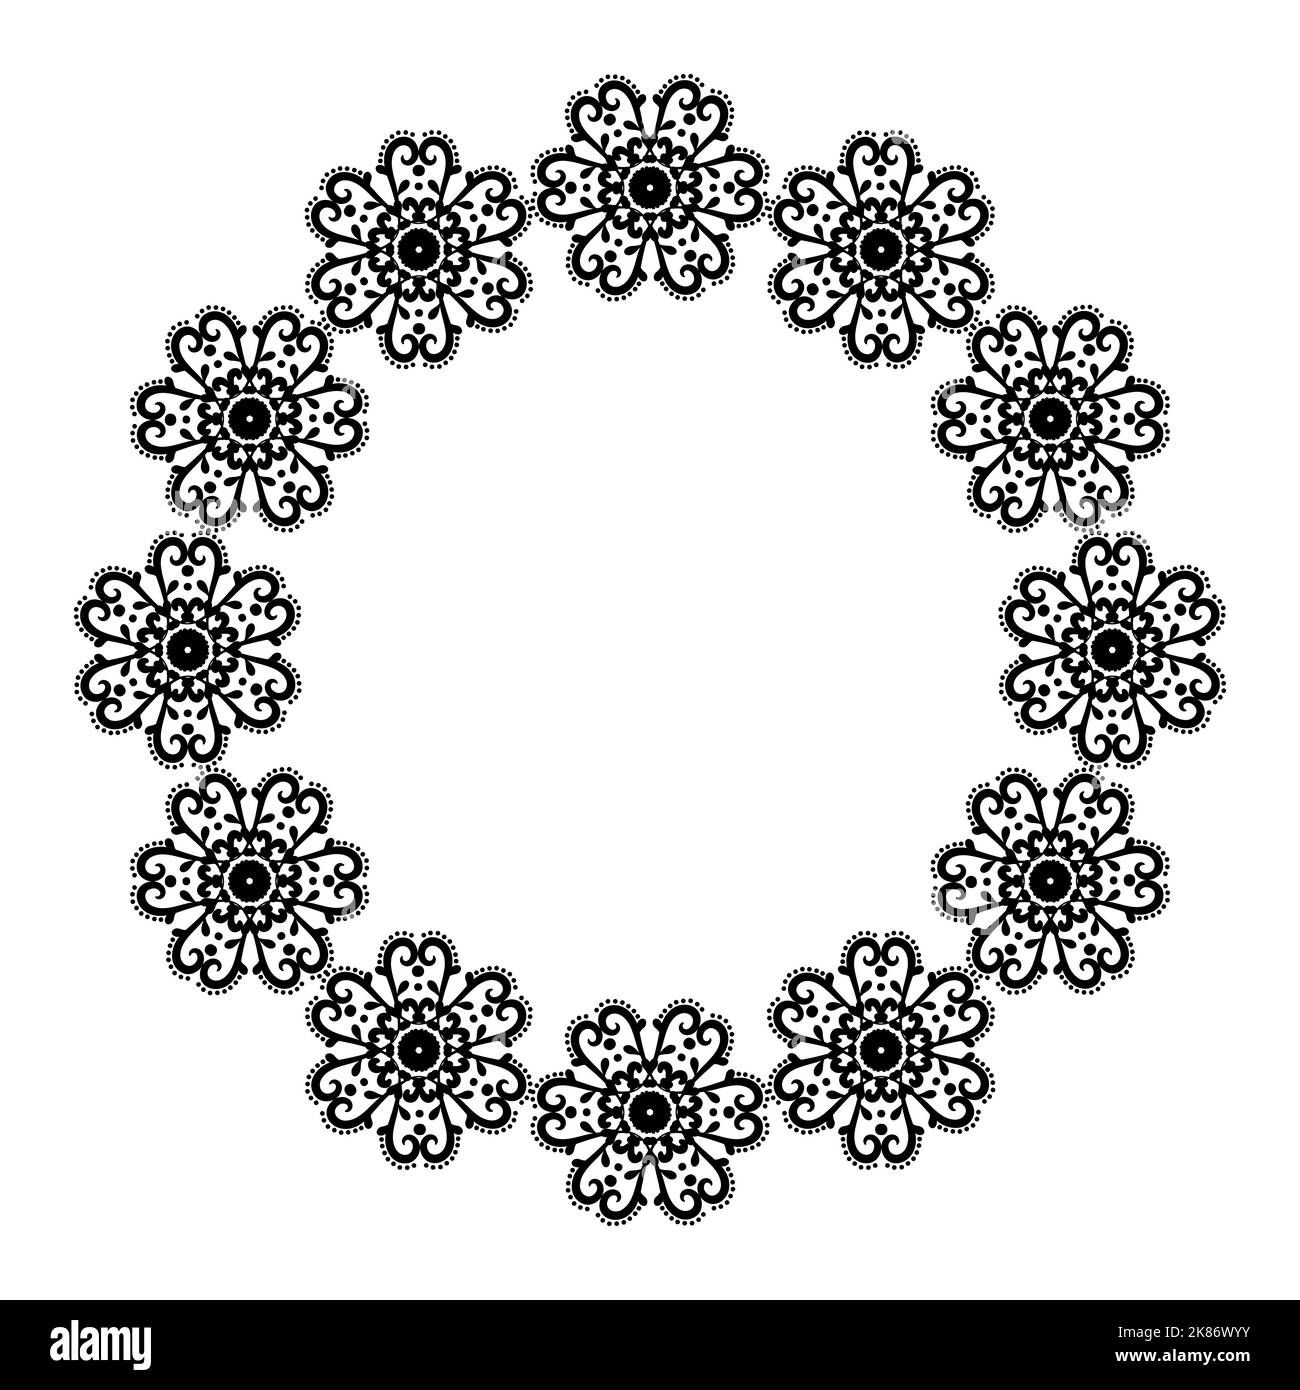 Rahmen mit floralem Ornament. Kreisförmige schwarze Blumenbordüre. Dekorativer Rand. Ornament zur Dekoration von Karten und Einladungen.Vektor-Illustration. Stock Vektor